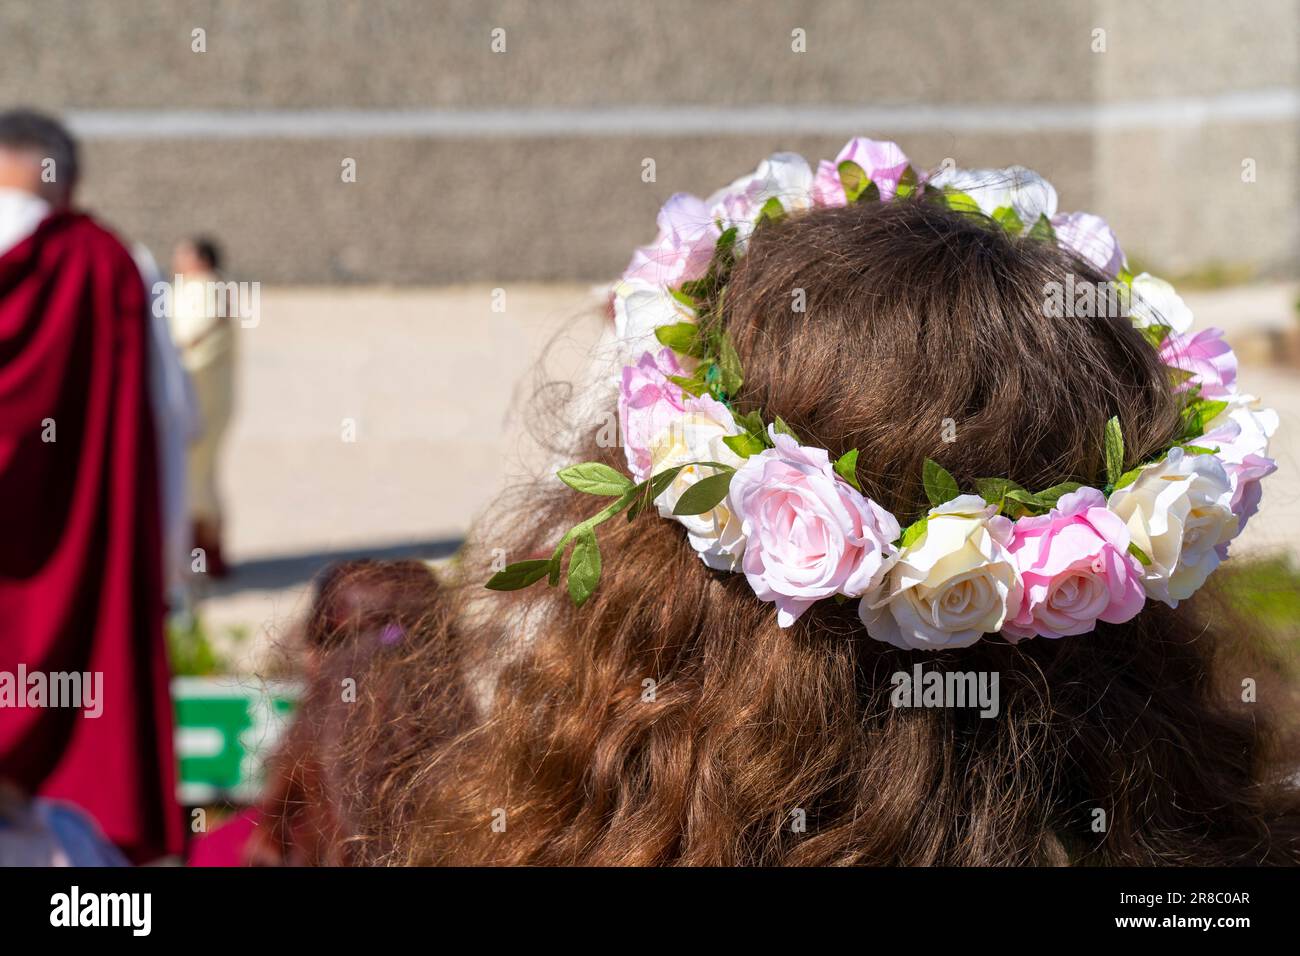 Muchacha con el pelo castaño largo con una guirnalda de la flor en su cabeza Foto de stock